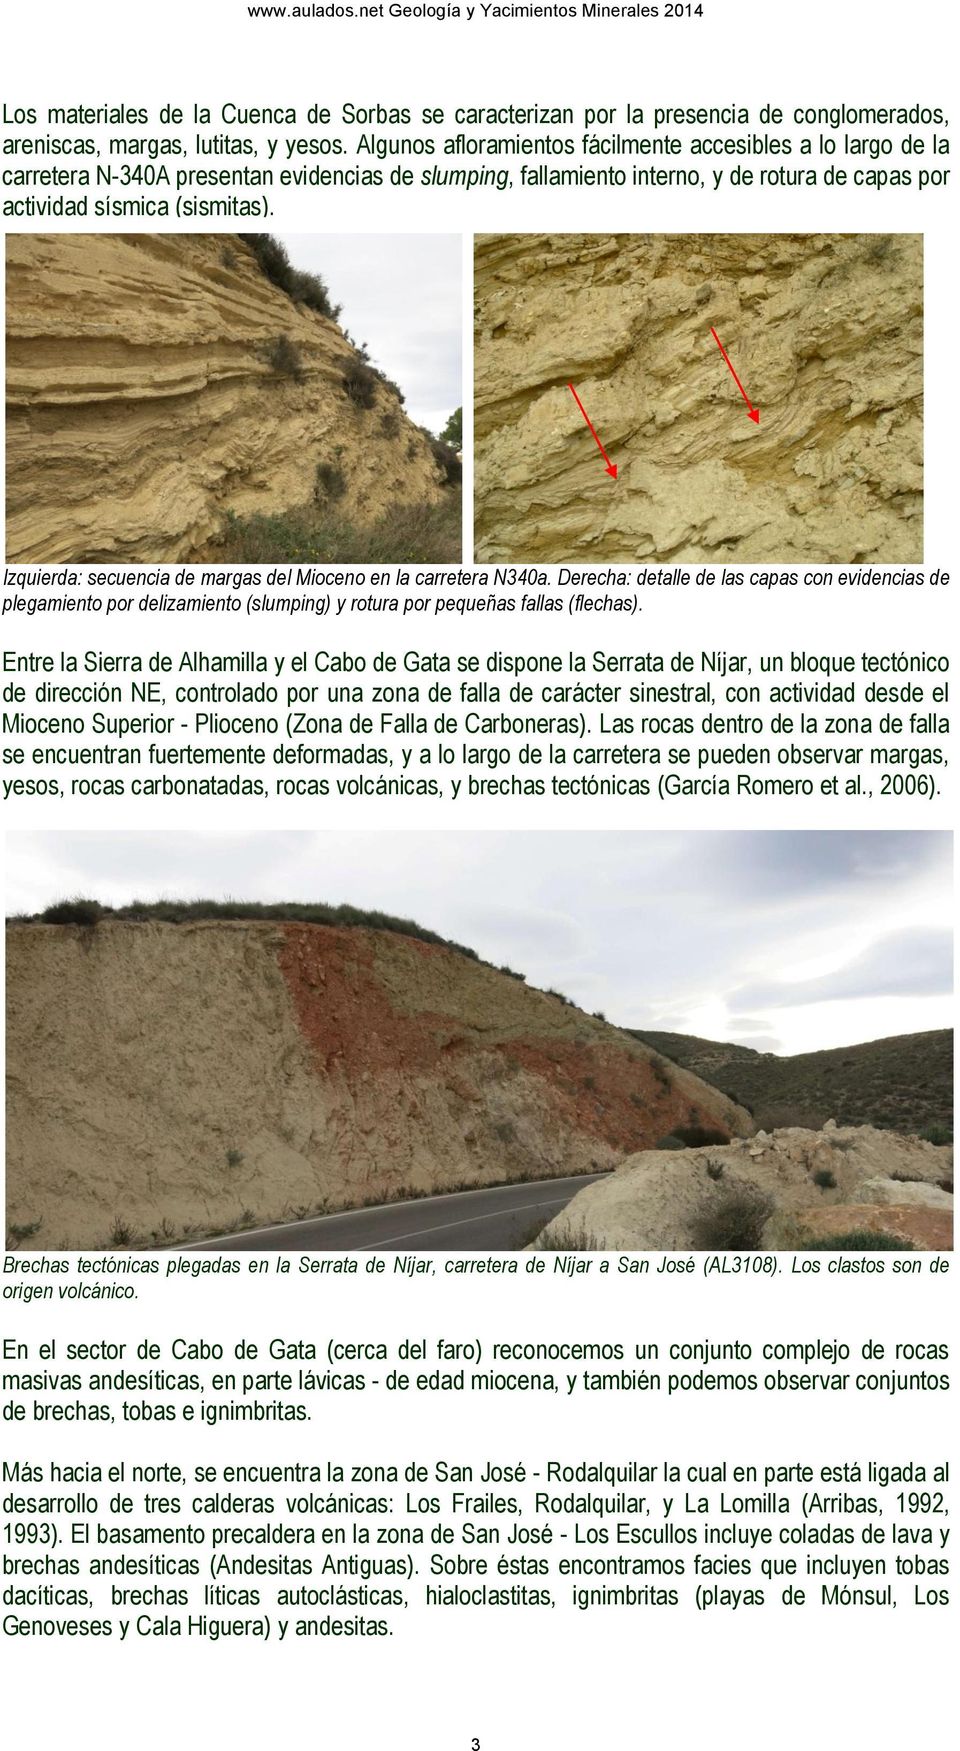 Izquierda: secuencia de margas del Mioceno en la carretera N340a. Derecha: detalle de las capas con evidencias de plegamiento por delizamiento (slumping) y rotura por pequeñas fallas (flechas).